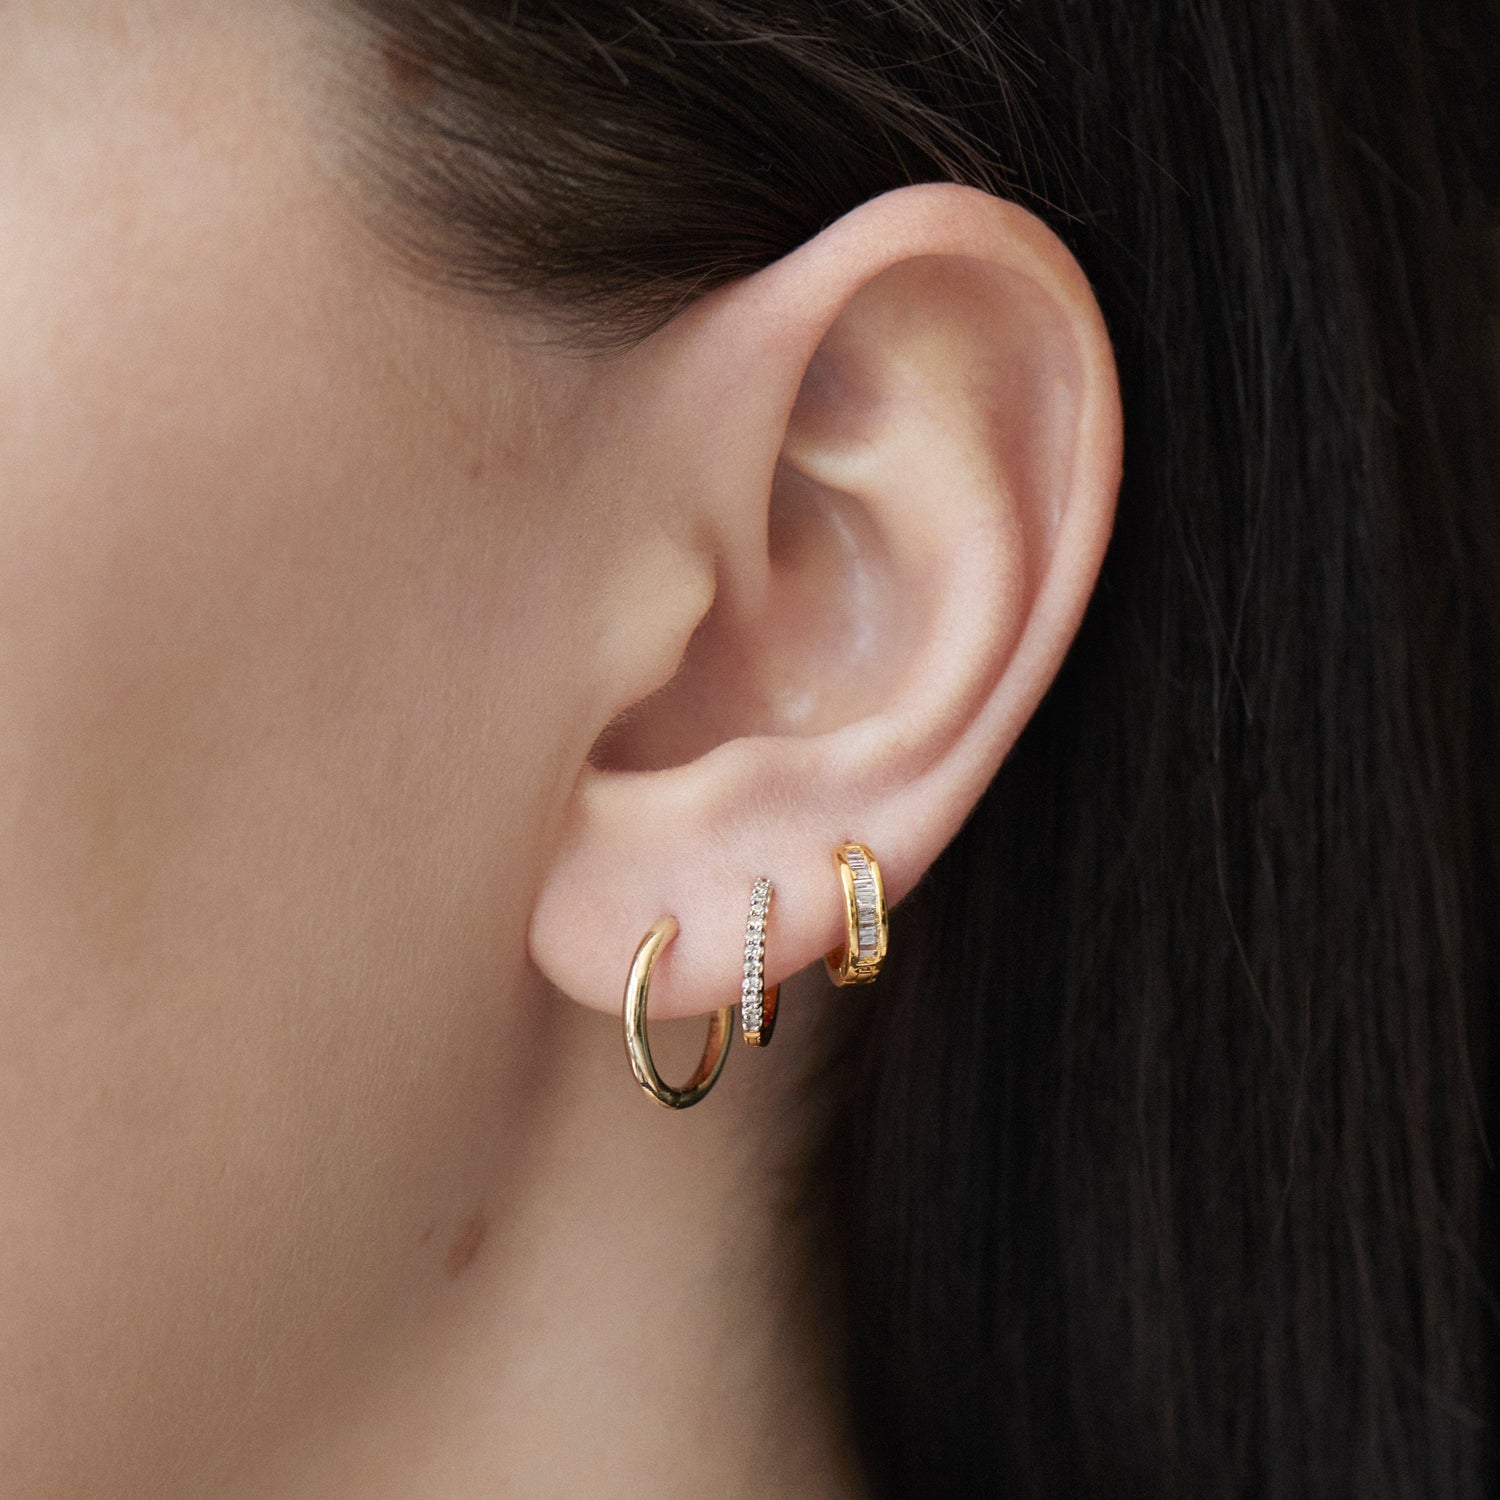 Buy Yellow Gold Earrings for Women by PC Chandra Jewellers Online   Ajiocom